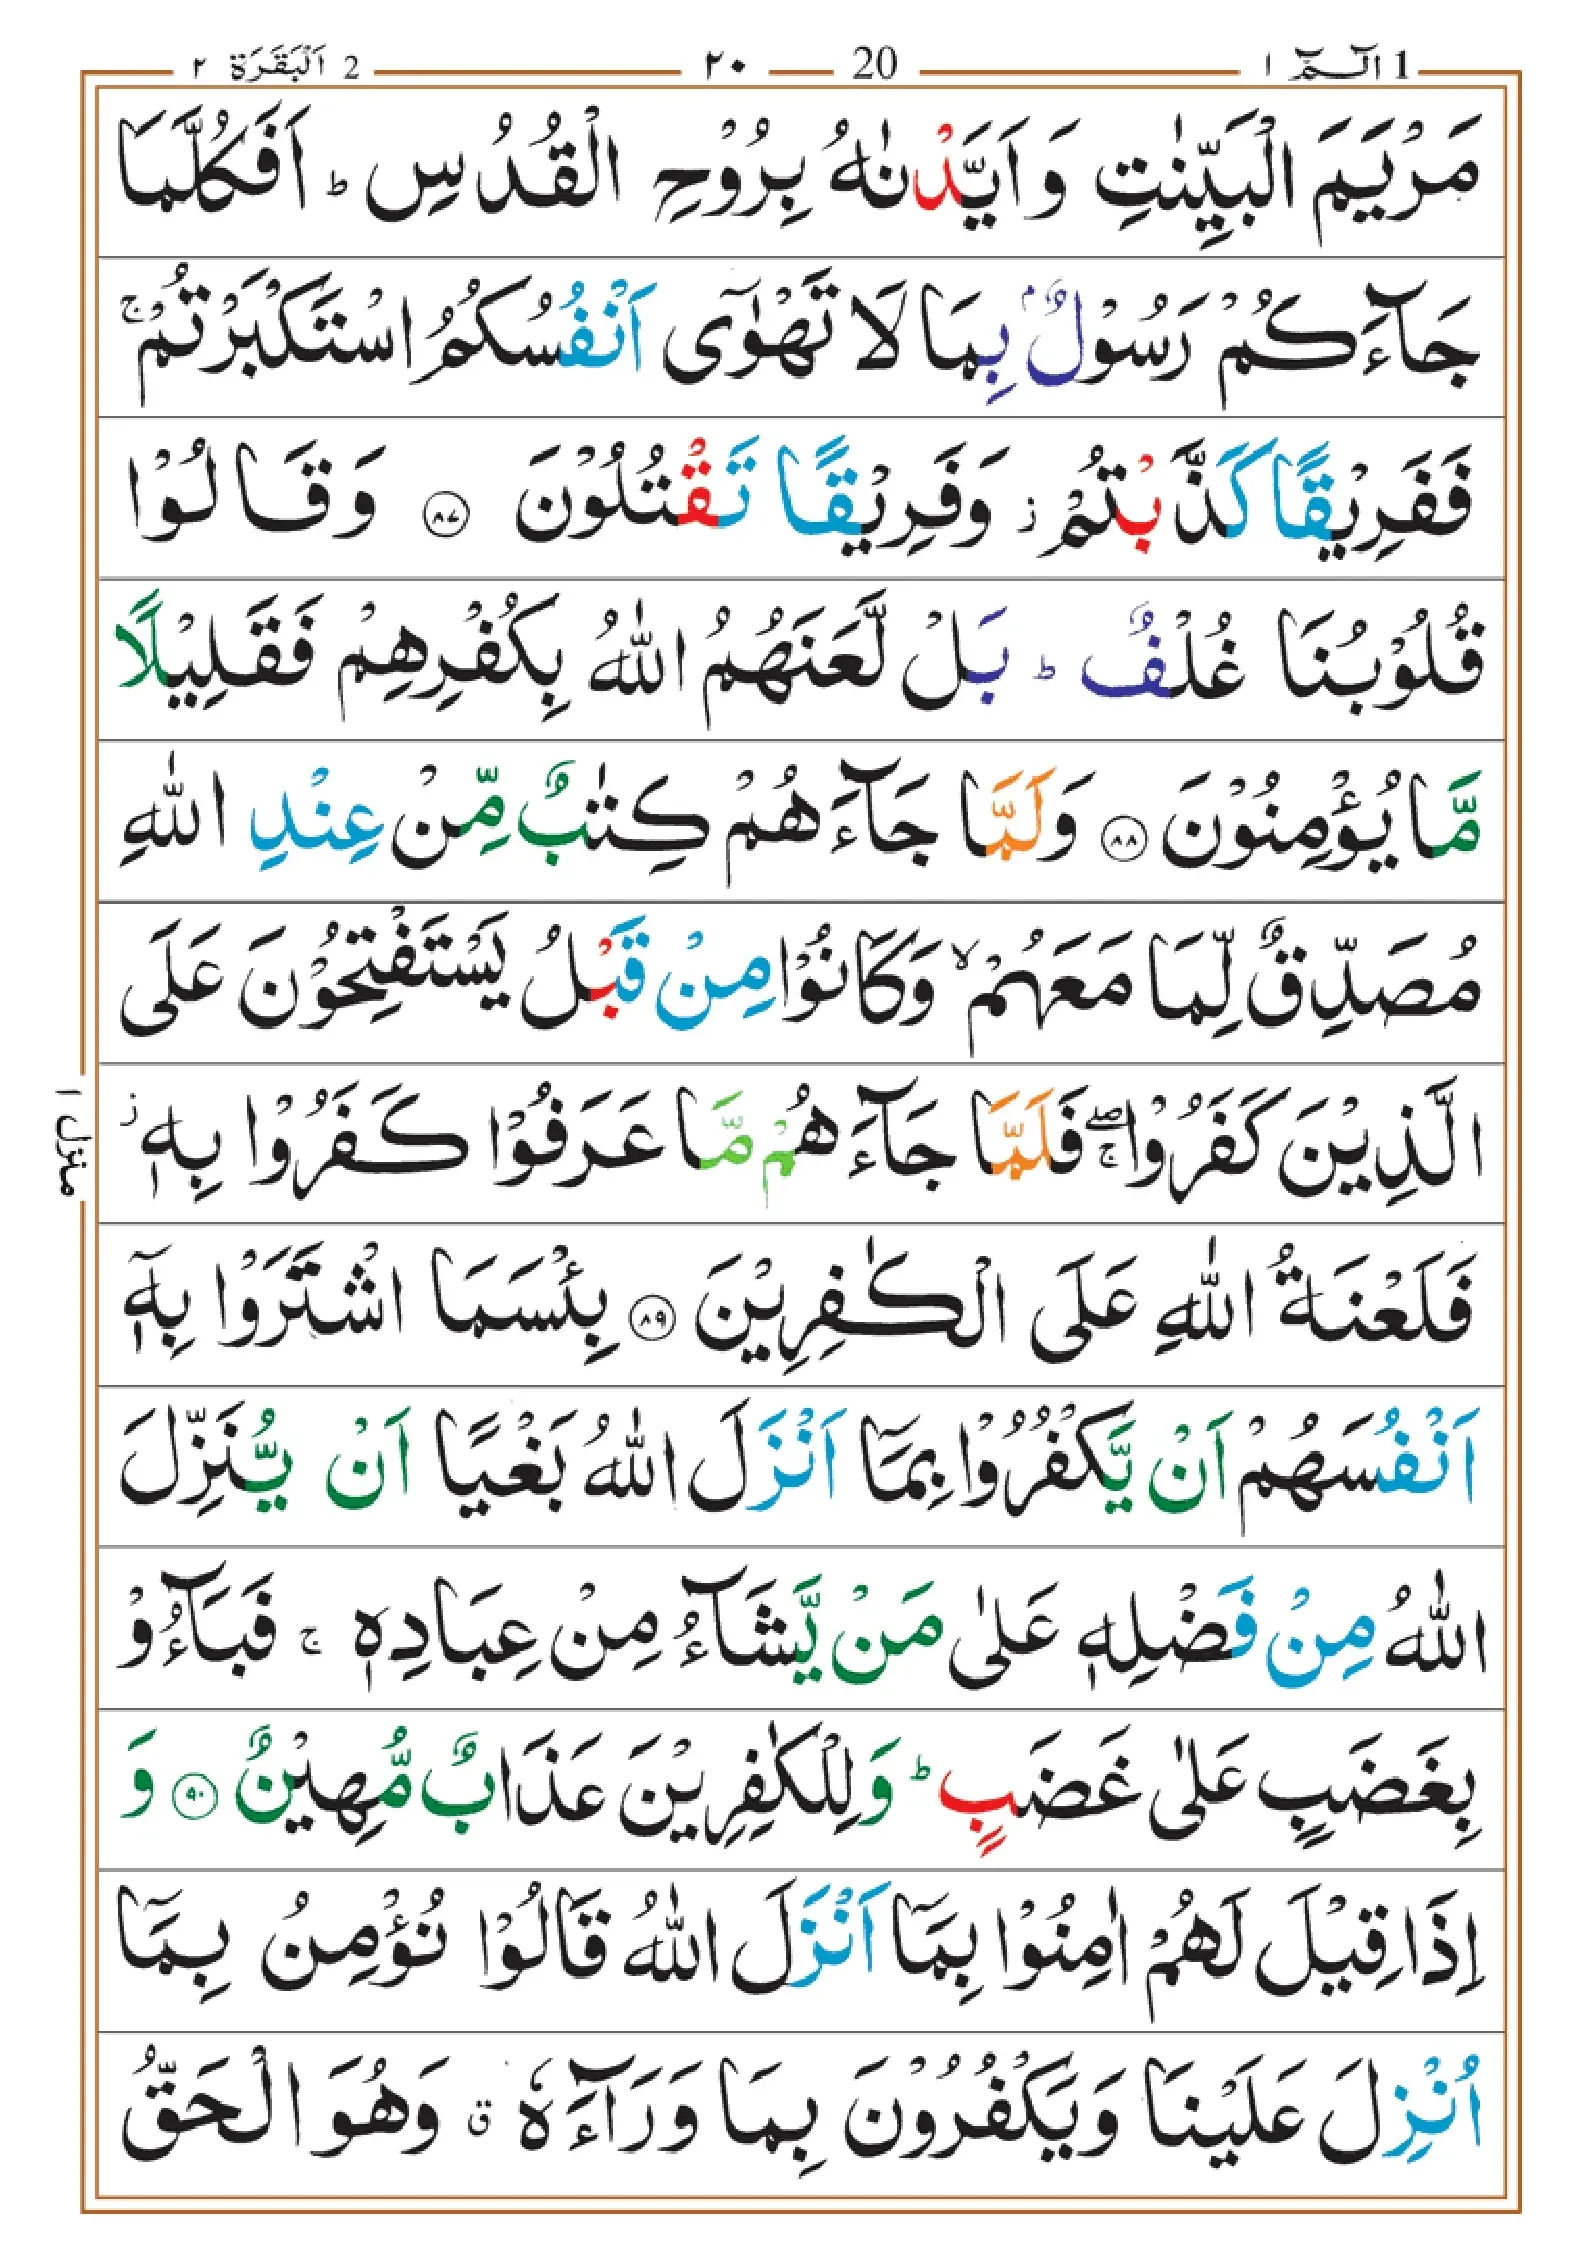 quran-para-1(1)_page-0020